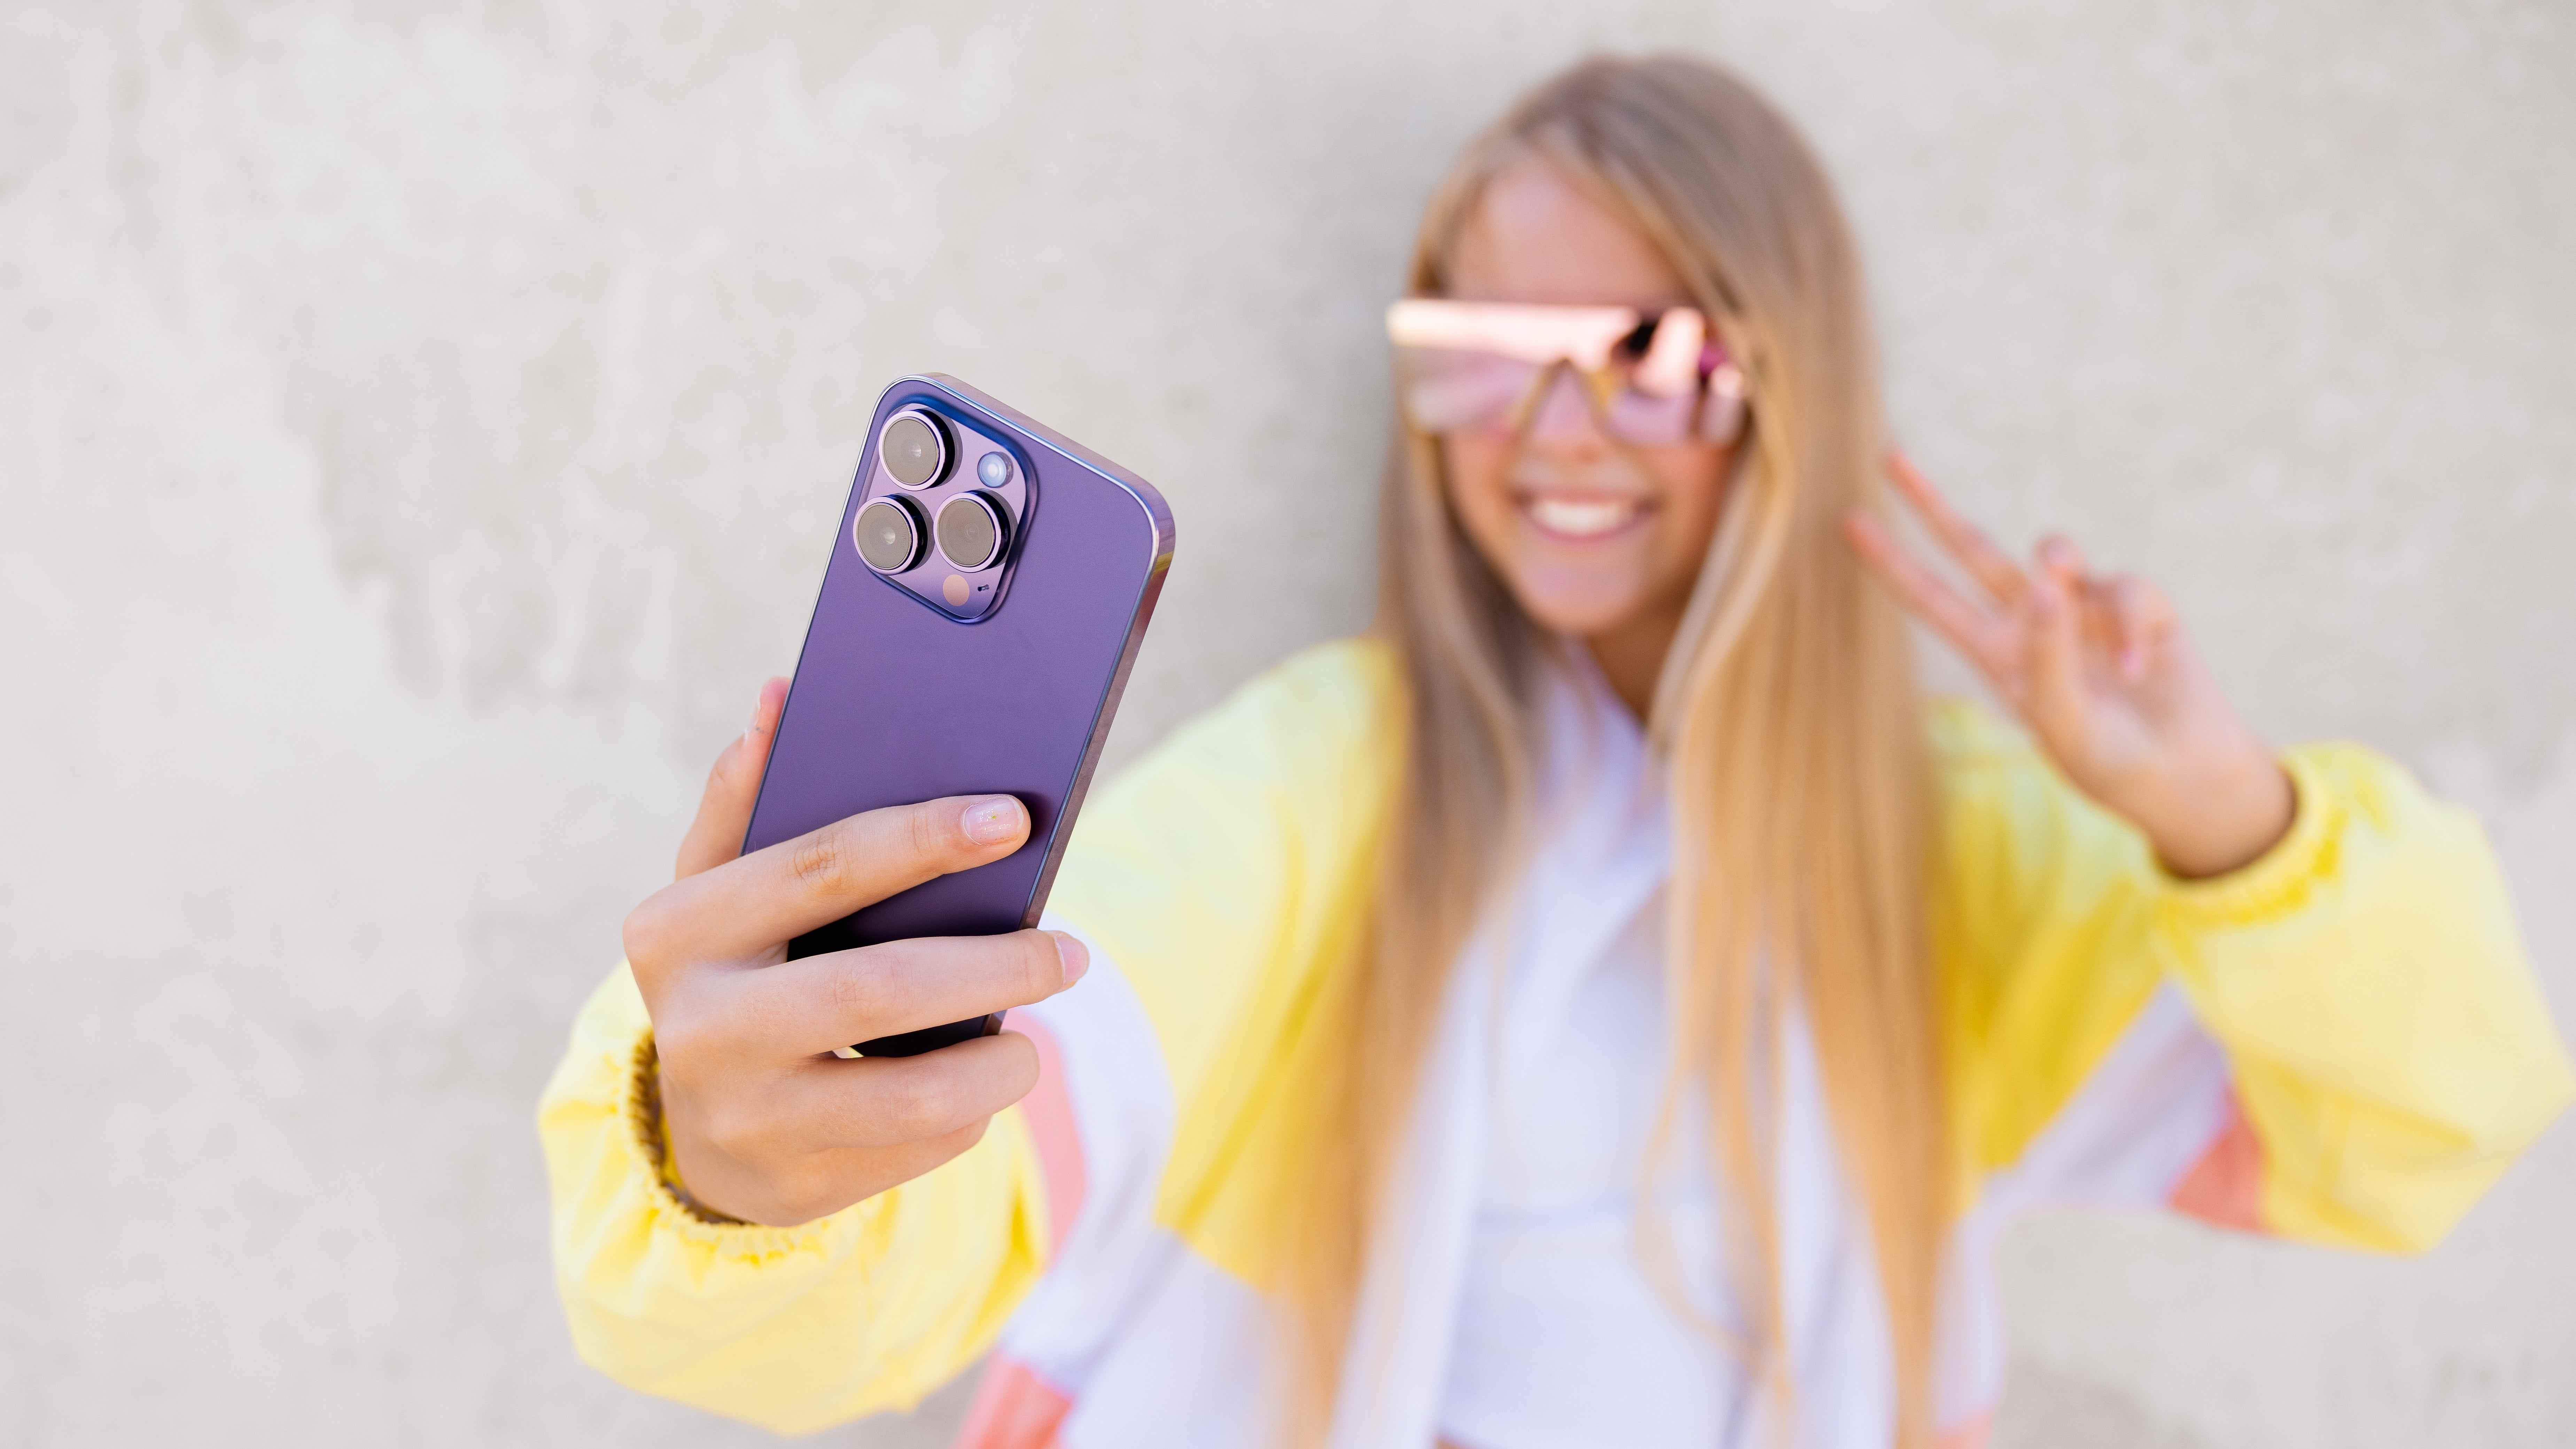 iPhone ile selfie çeken genç kız